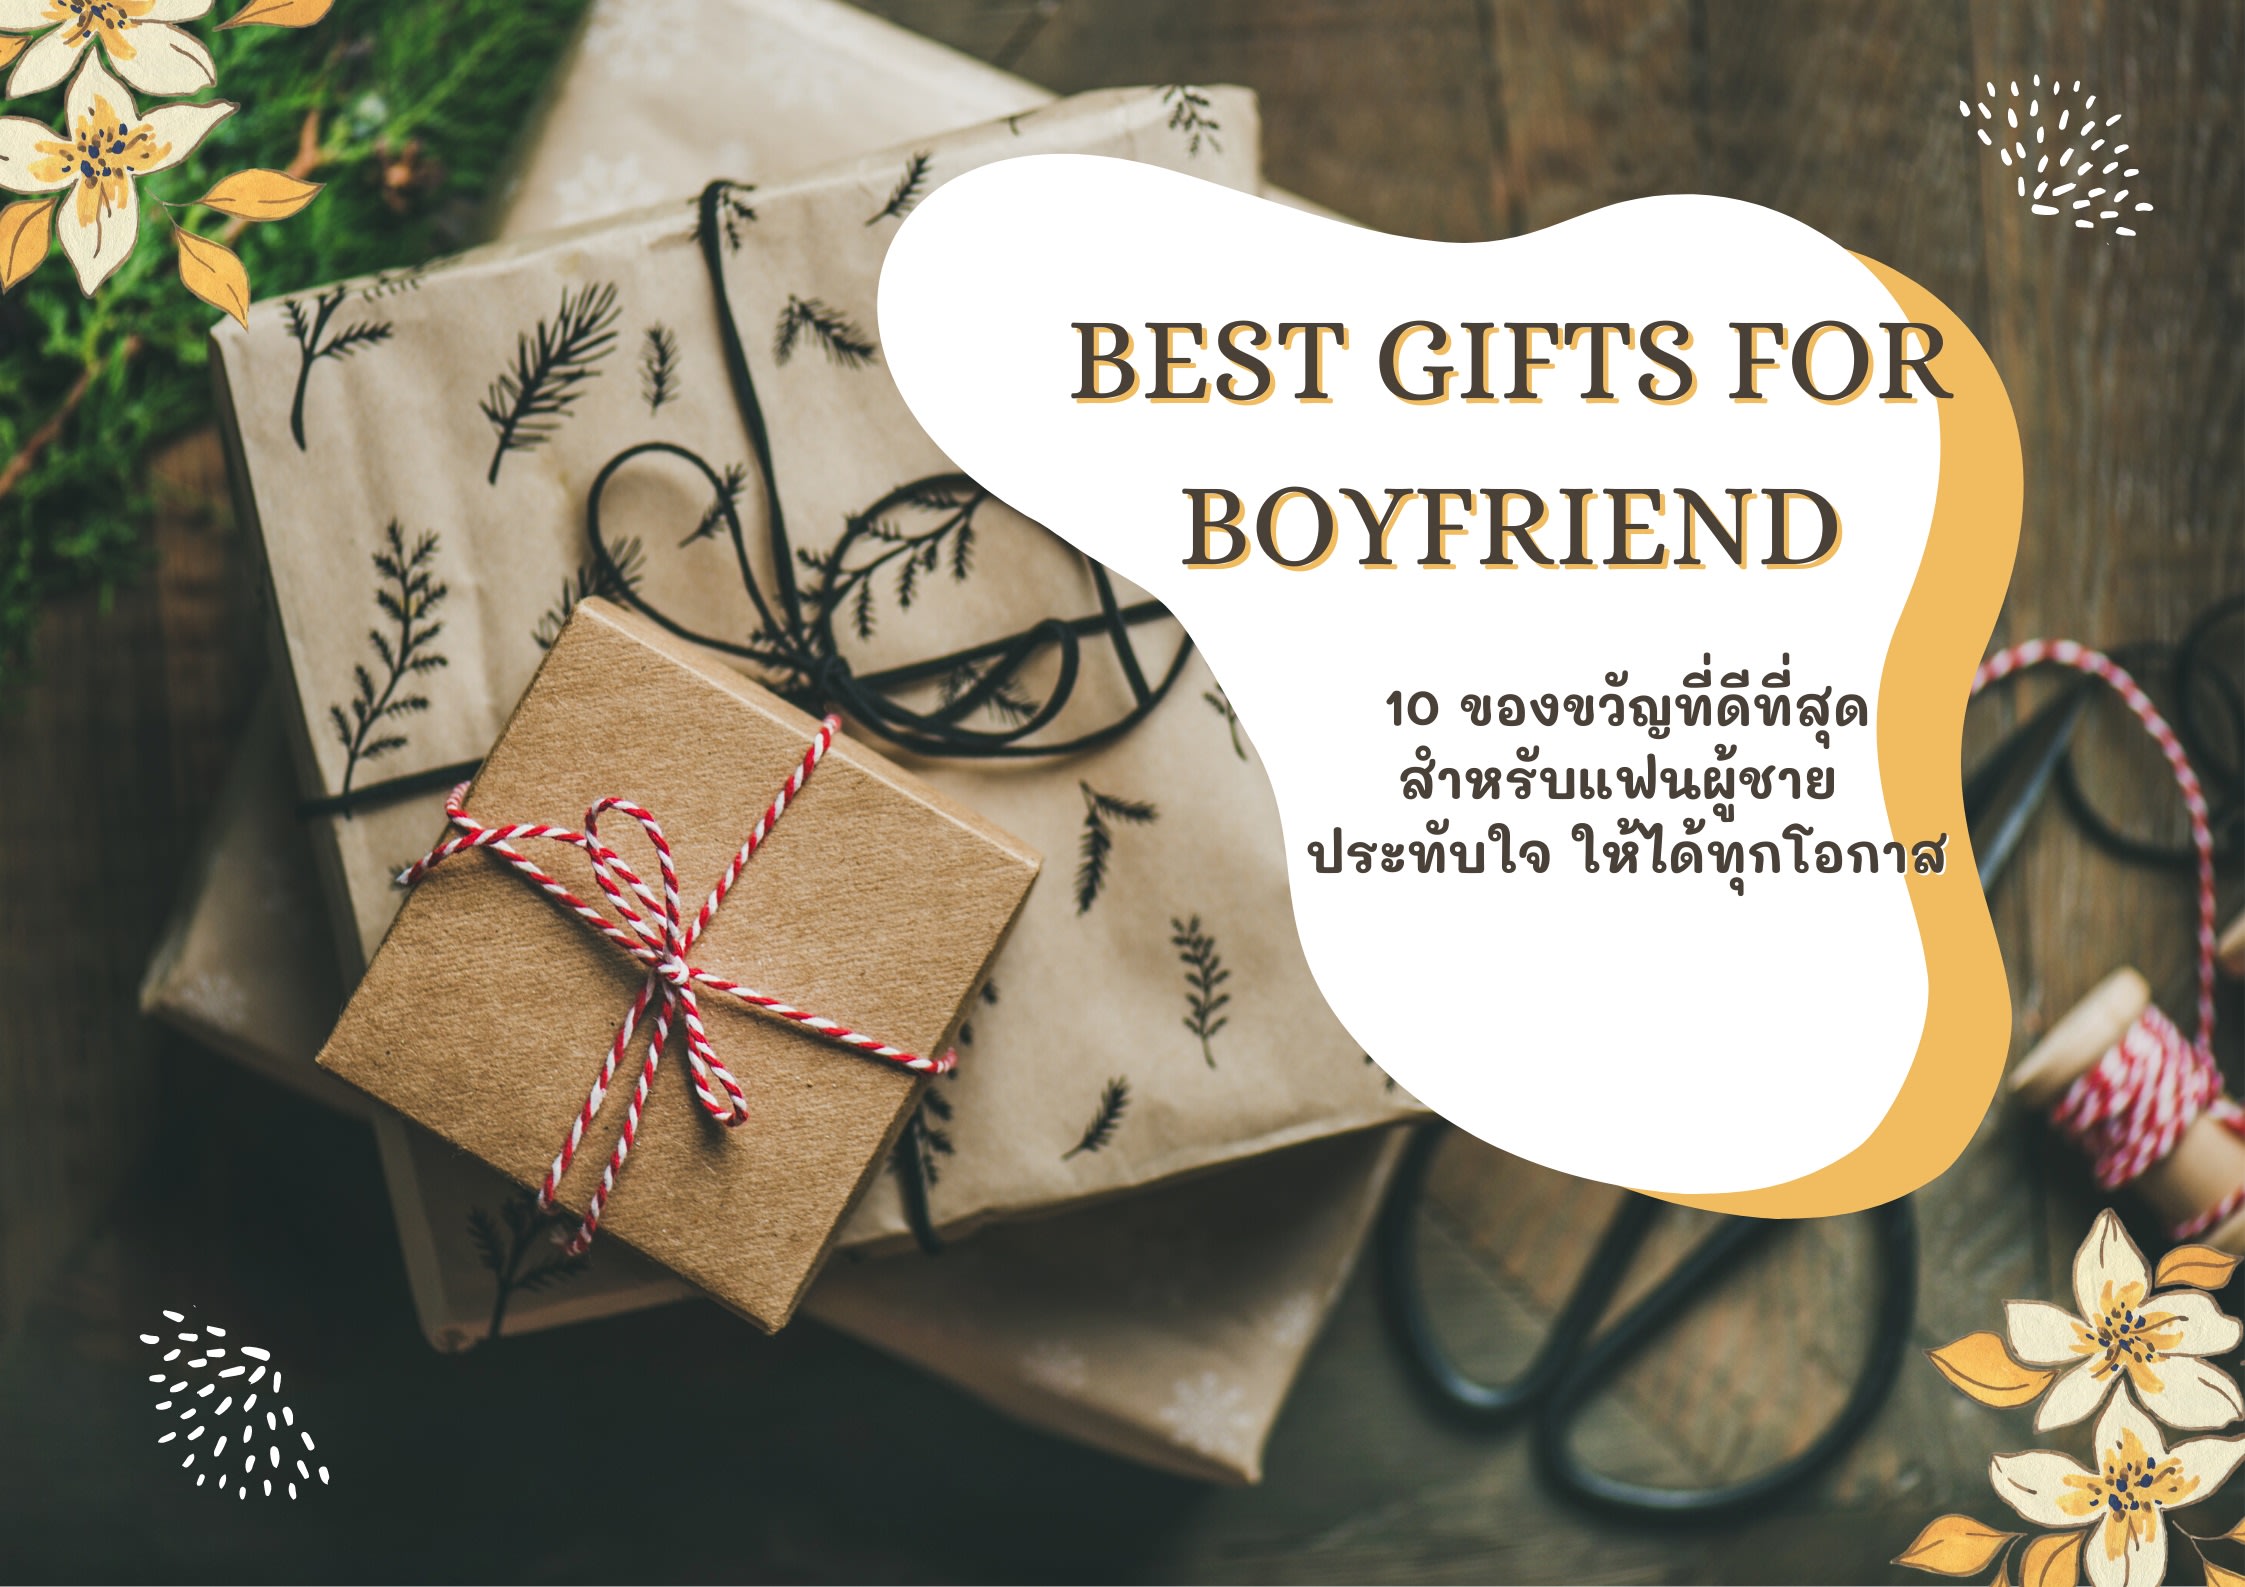 वेलंटाइन डे पर 25 gift ideas for boyfriend / men...Valentine day gift for bf  - YouTube